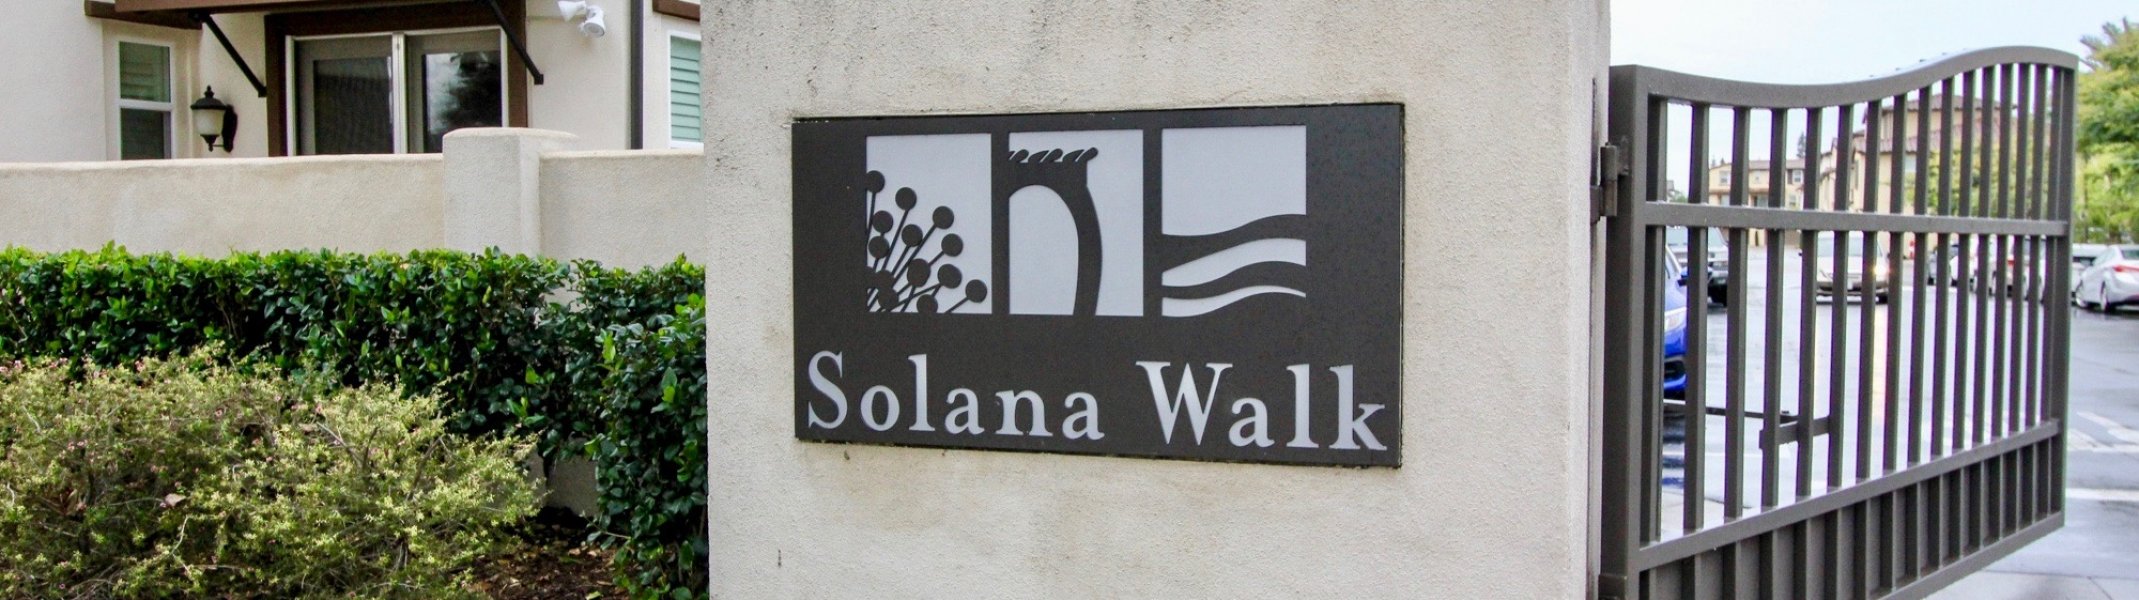 Solana Walk